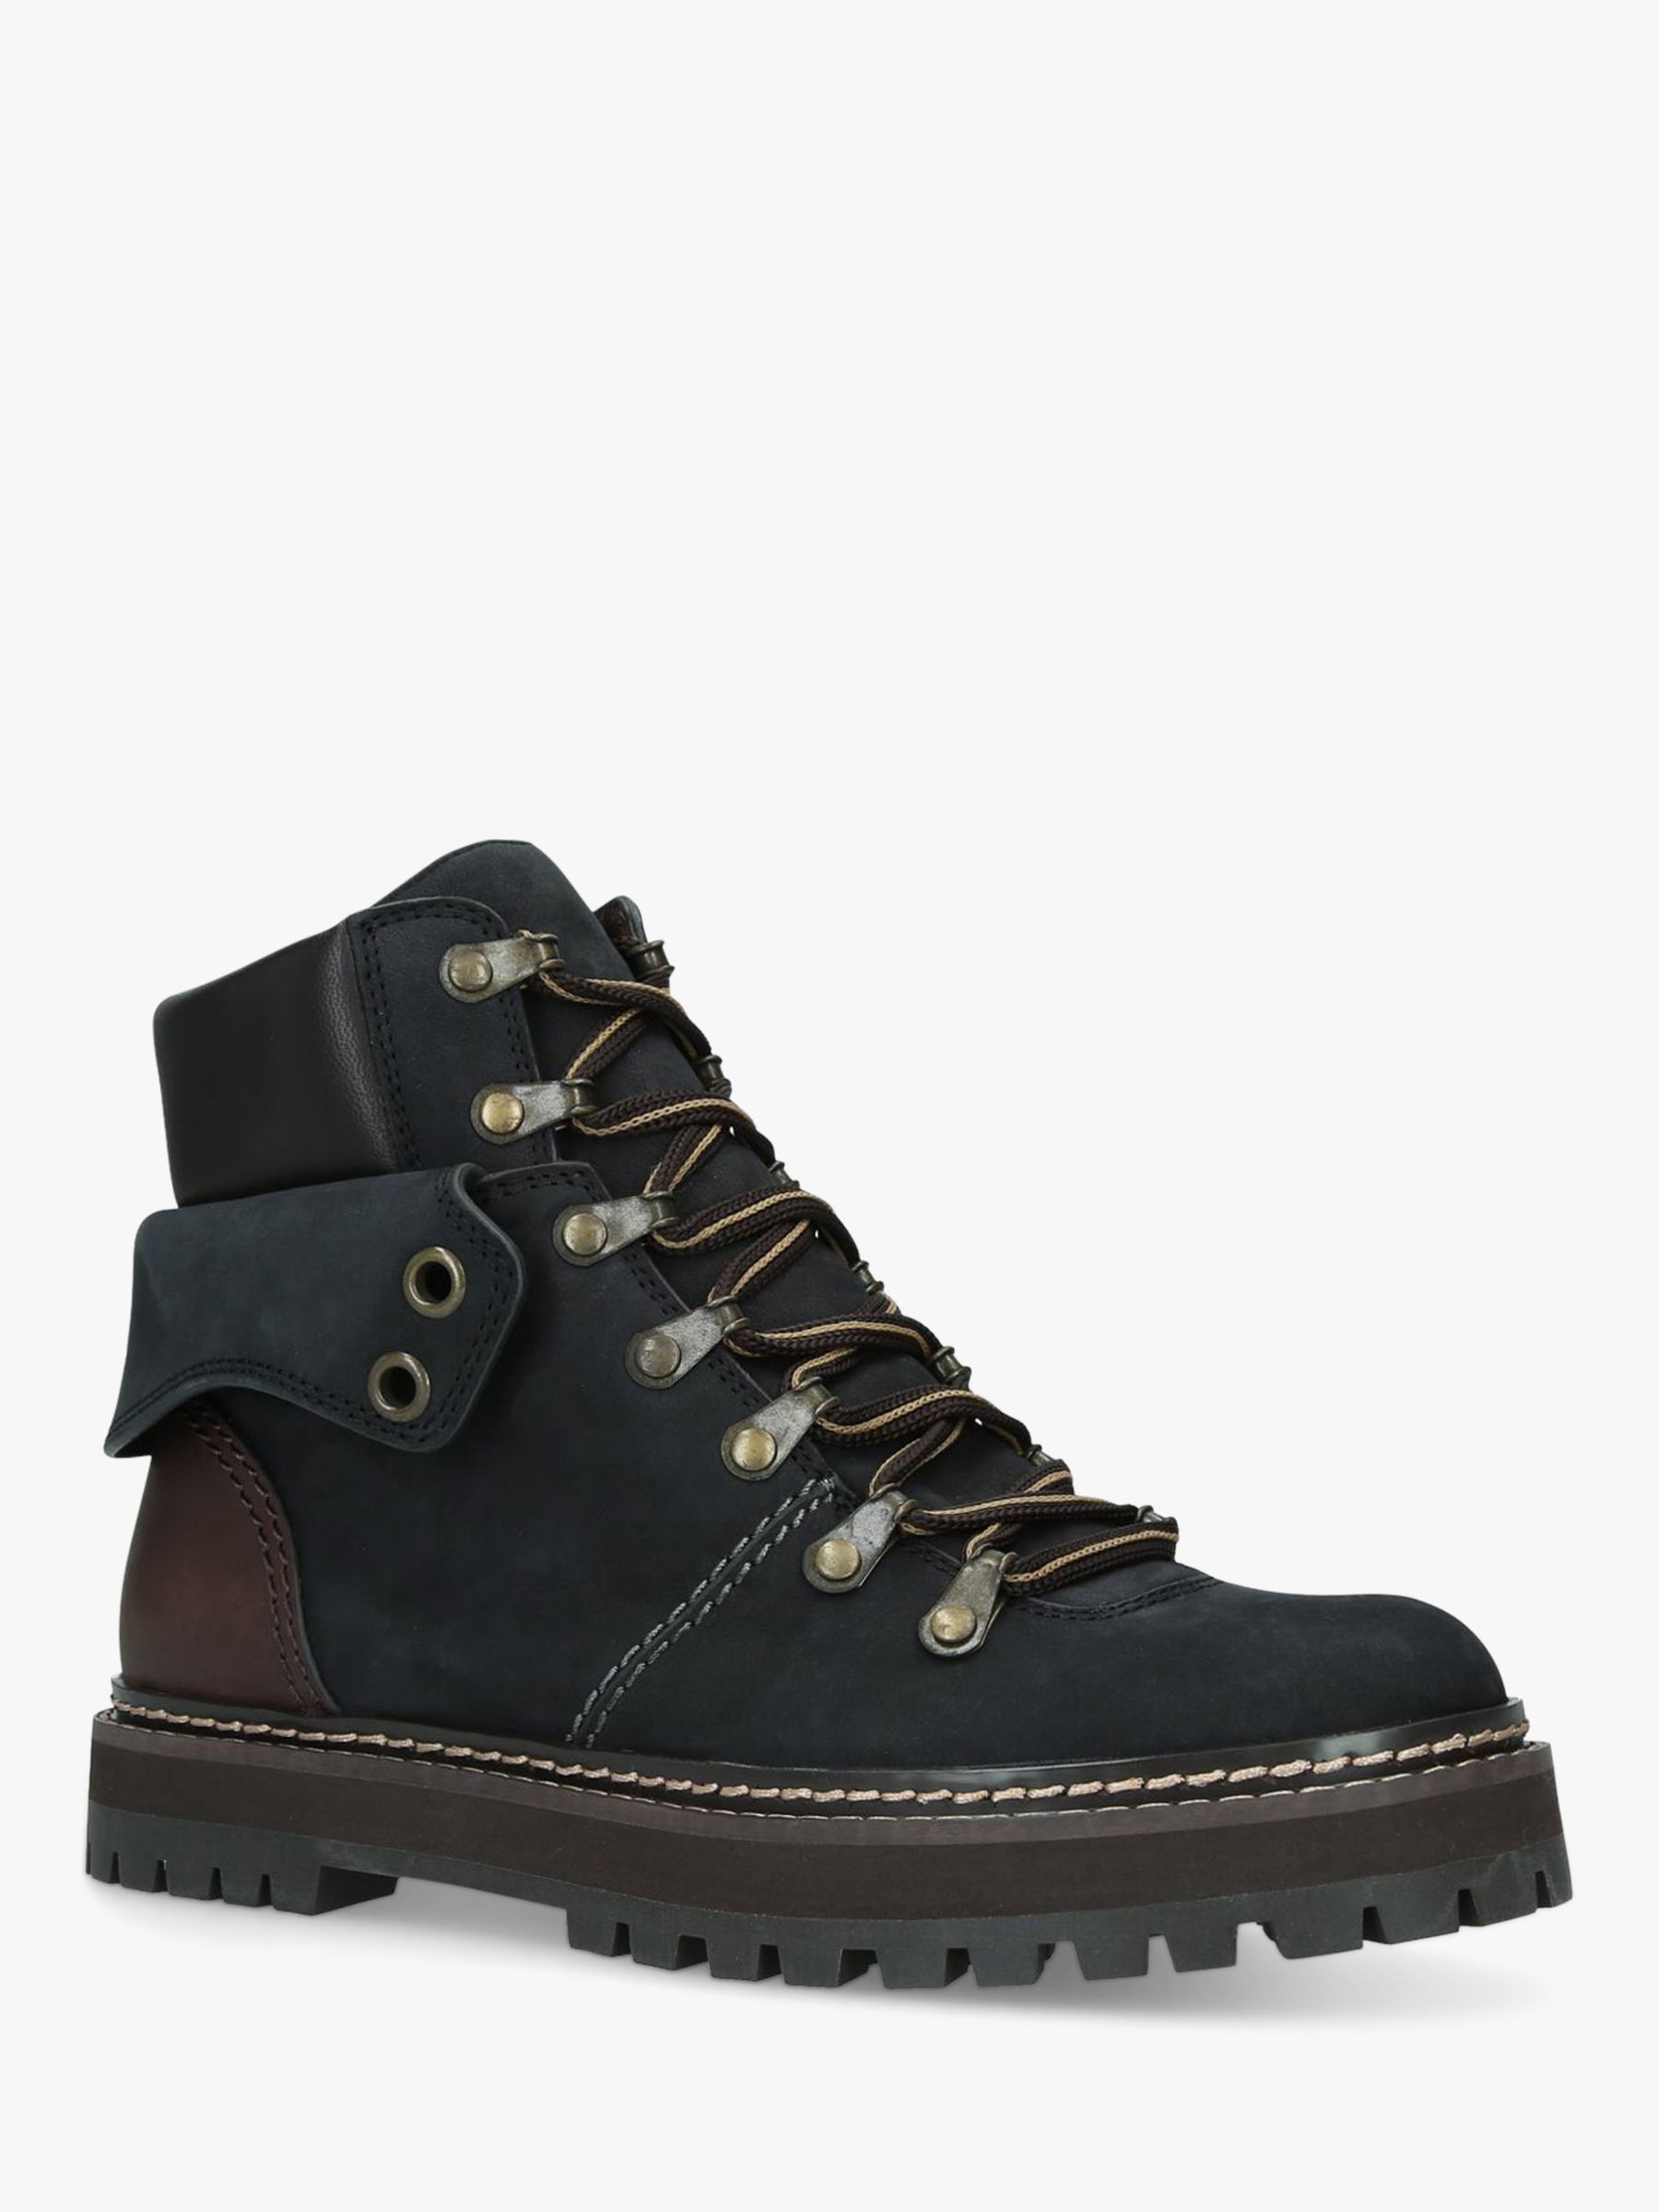 buy walking boots online